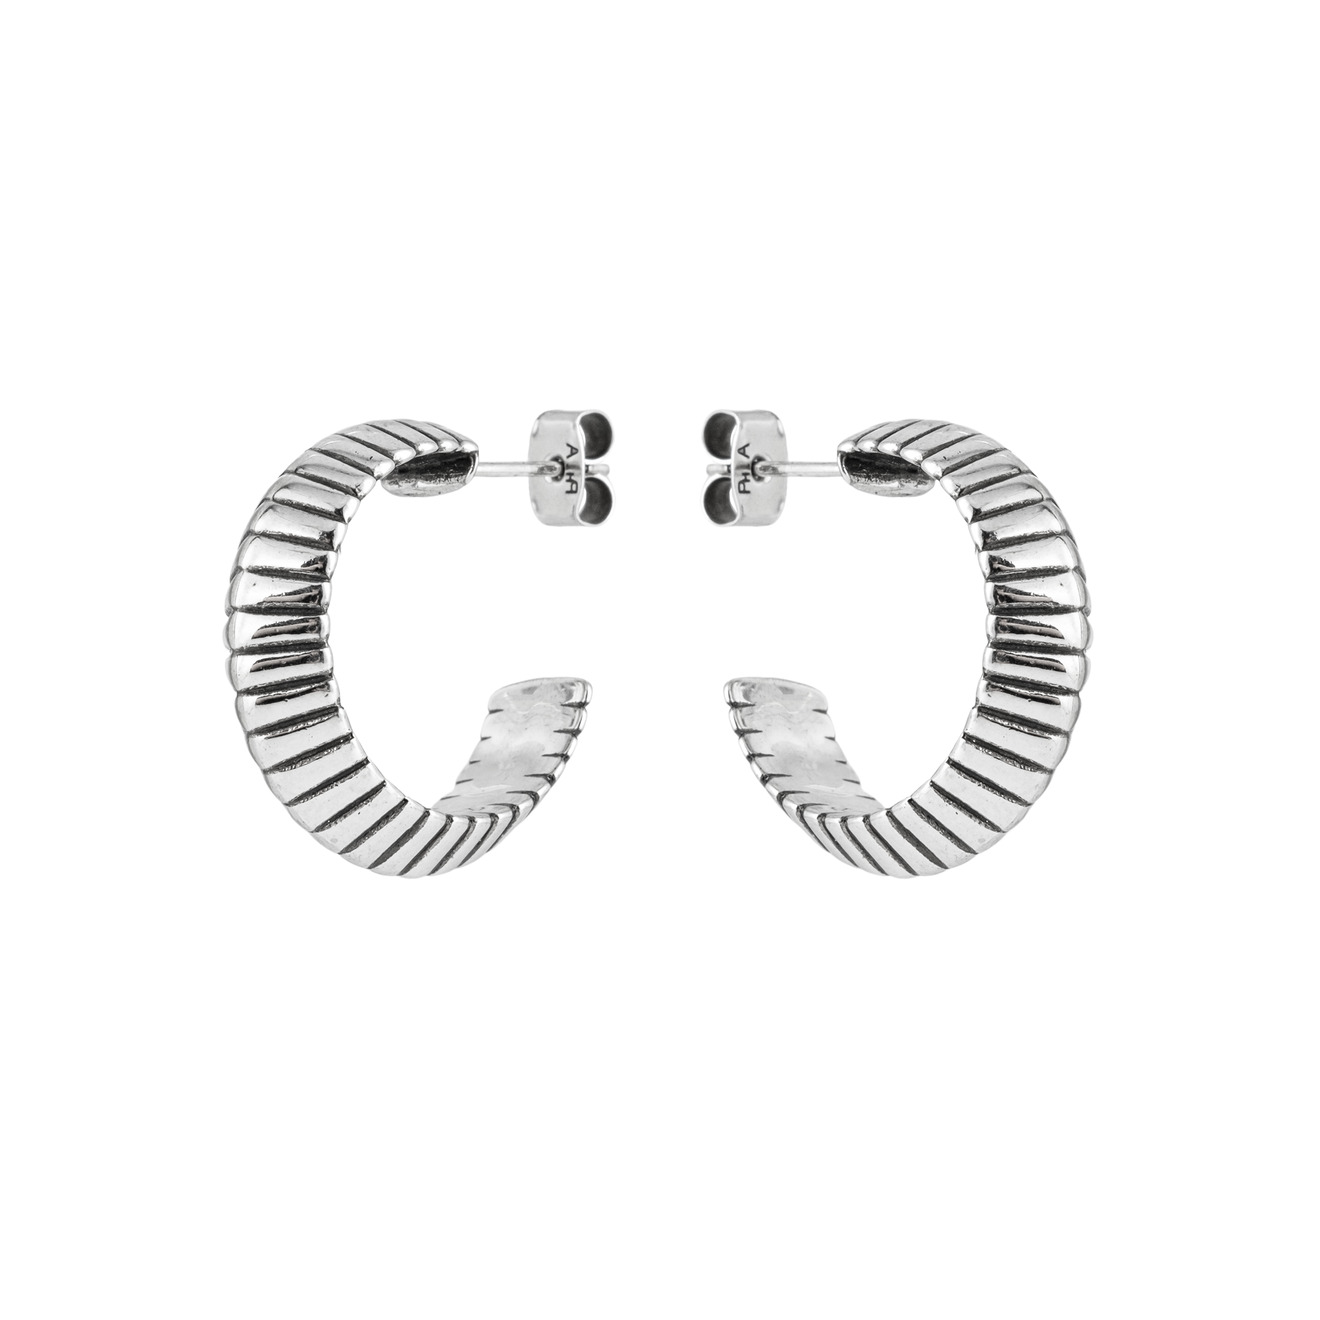 Philippe Audibert Серьги-кольца Jens с серебряным покрытием philippe audibert серьги кольца joshua с серебряным покрытием